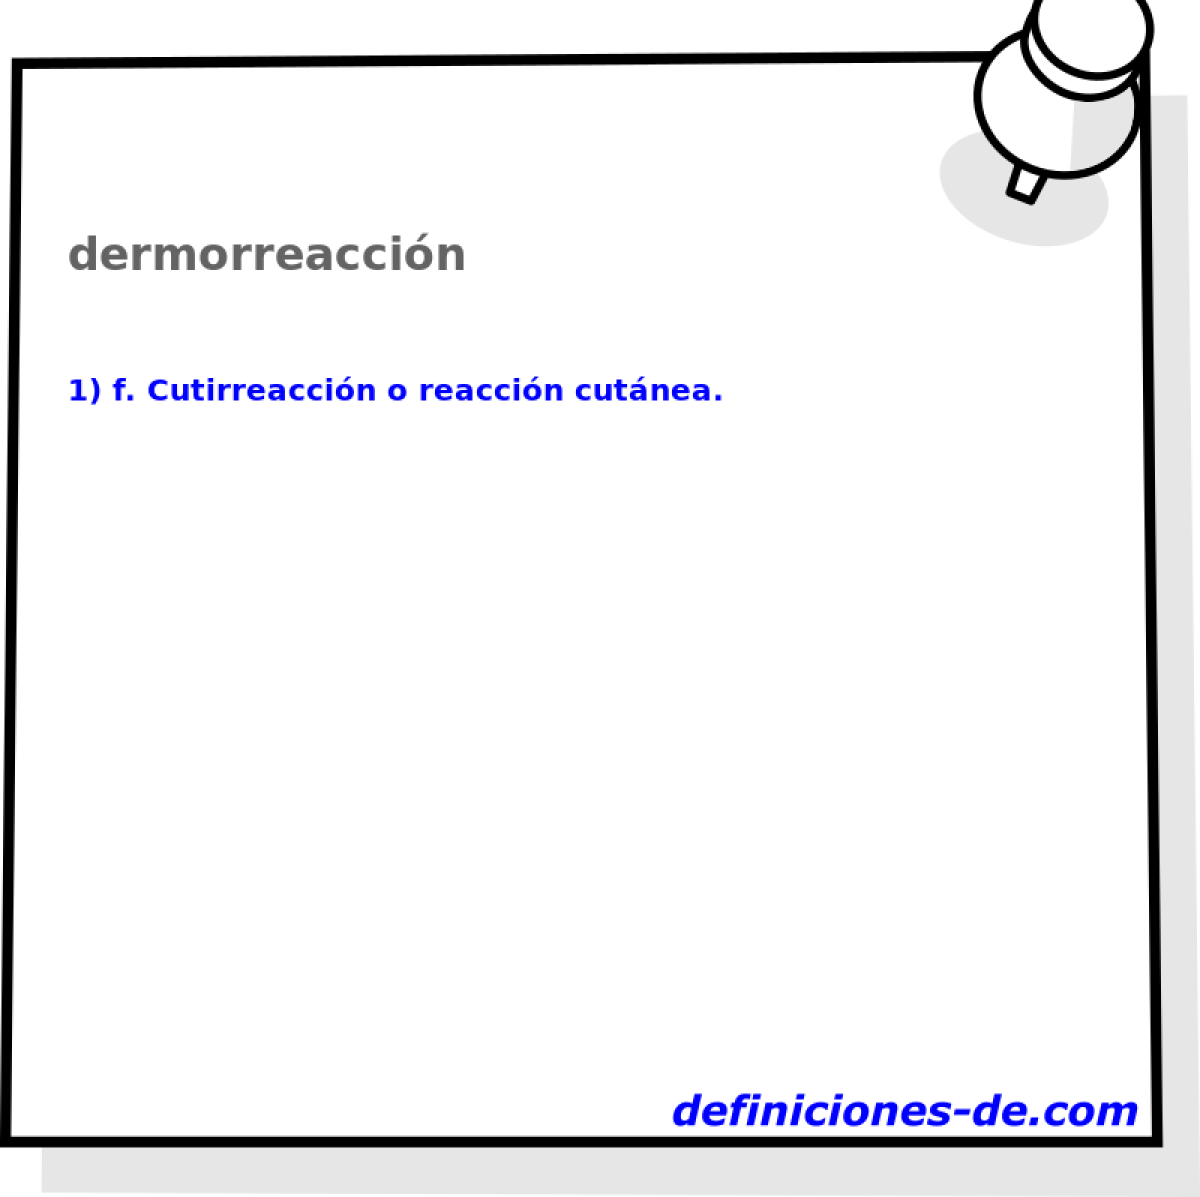 dermorreaccin 